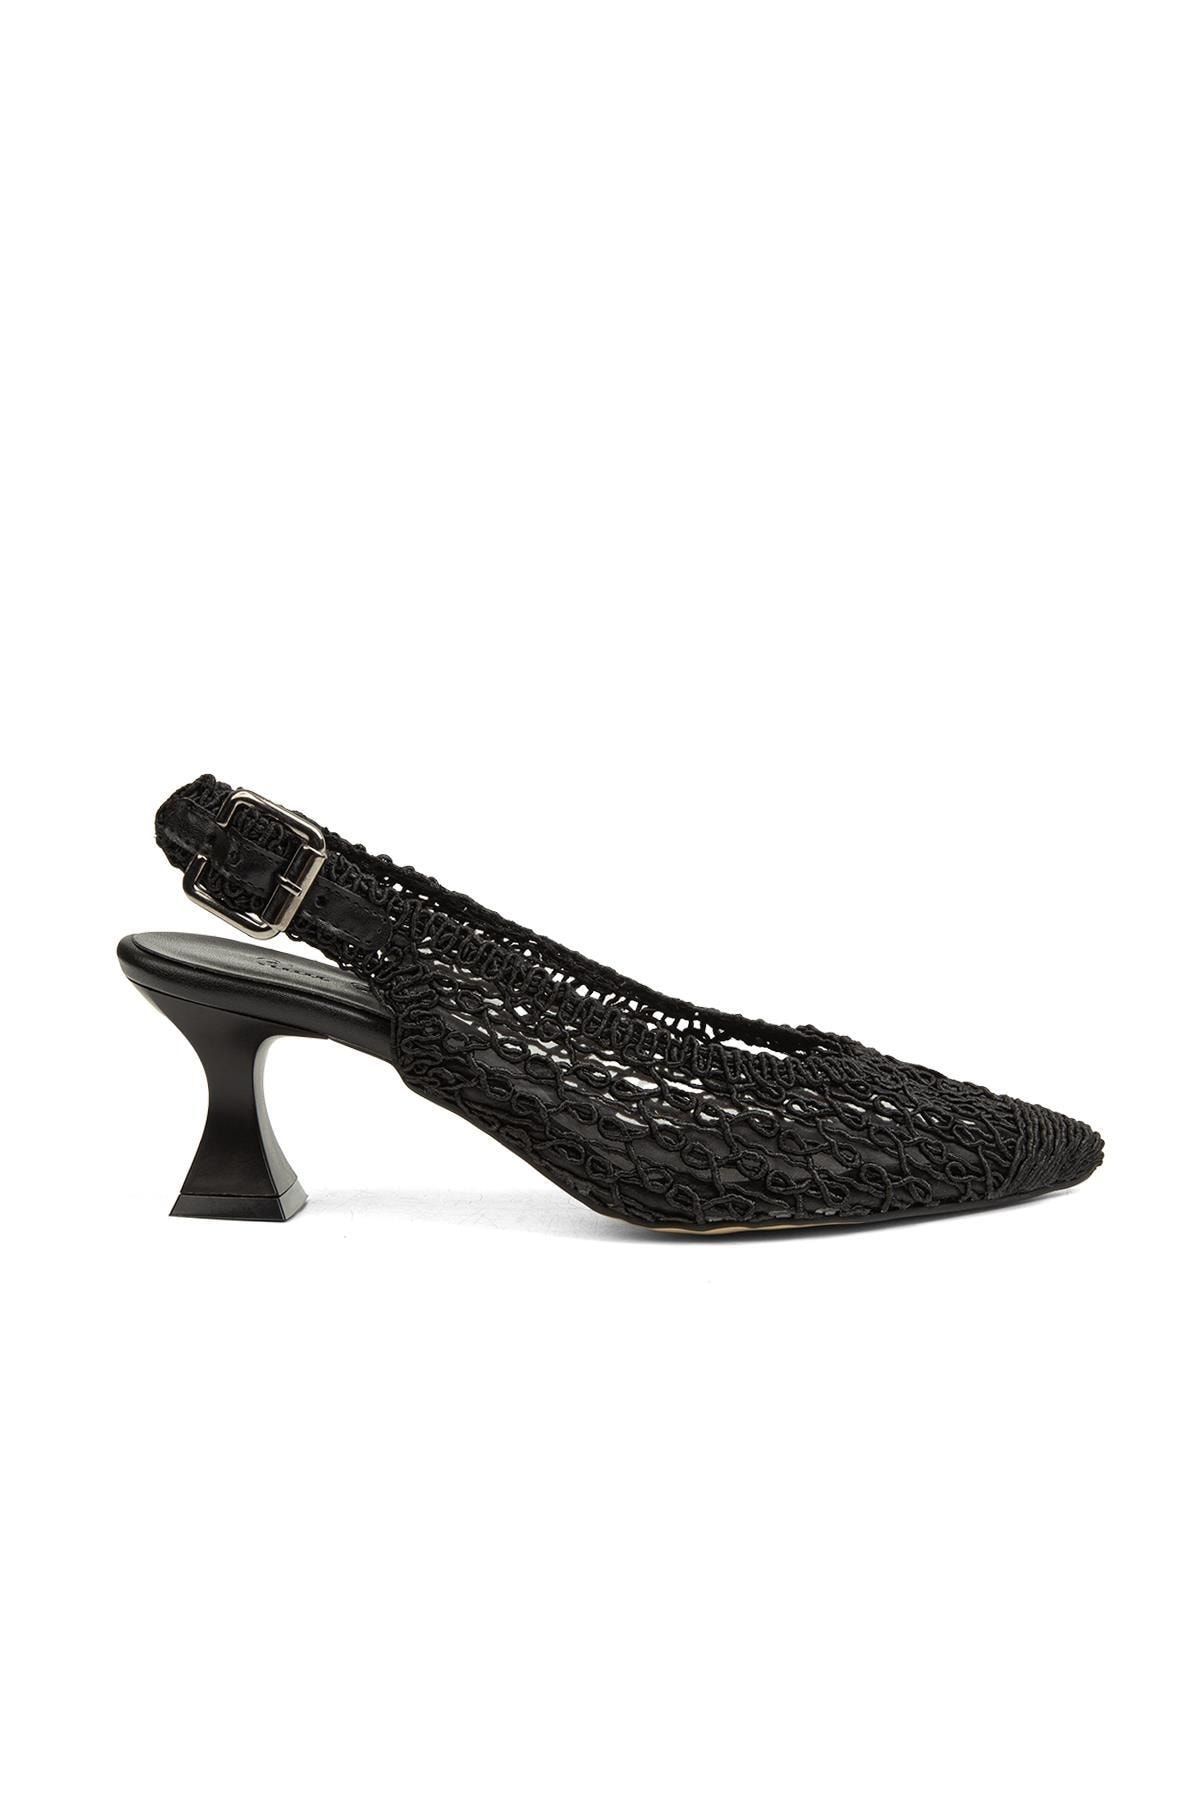 Pierre Cardin ® | Pc-52260-3959 Siyah - Kadın Topuklu Ayakkabı